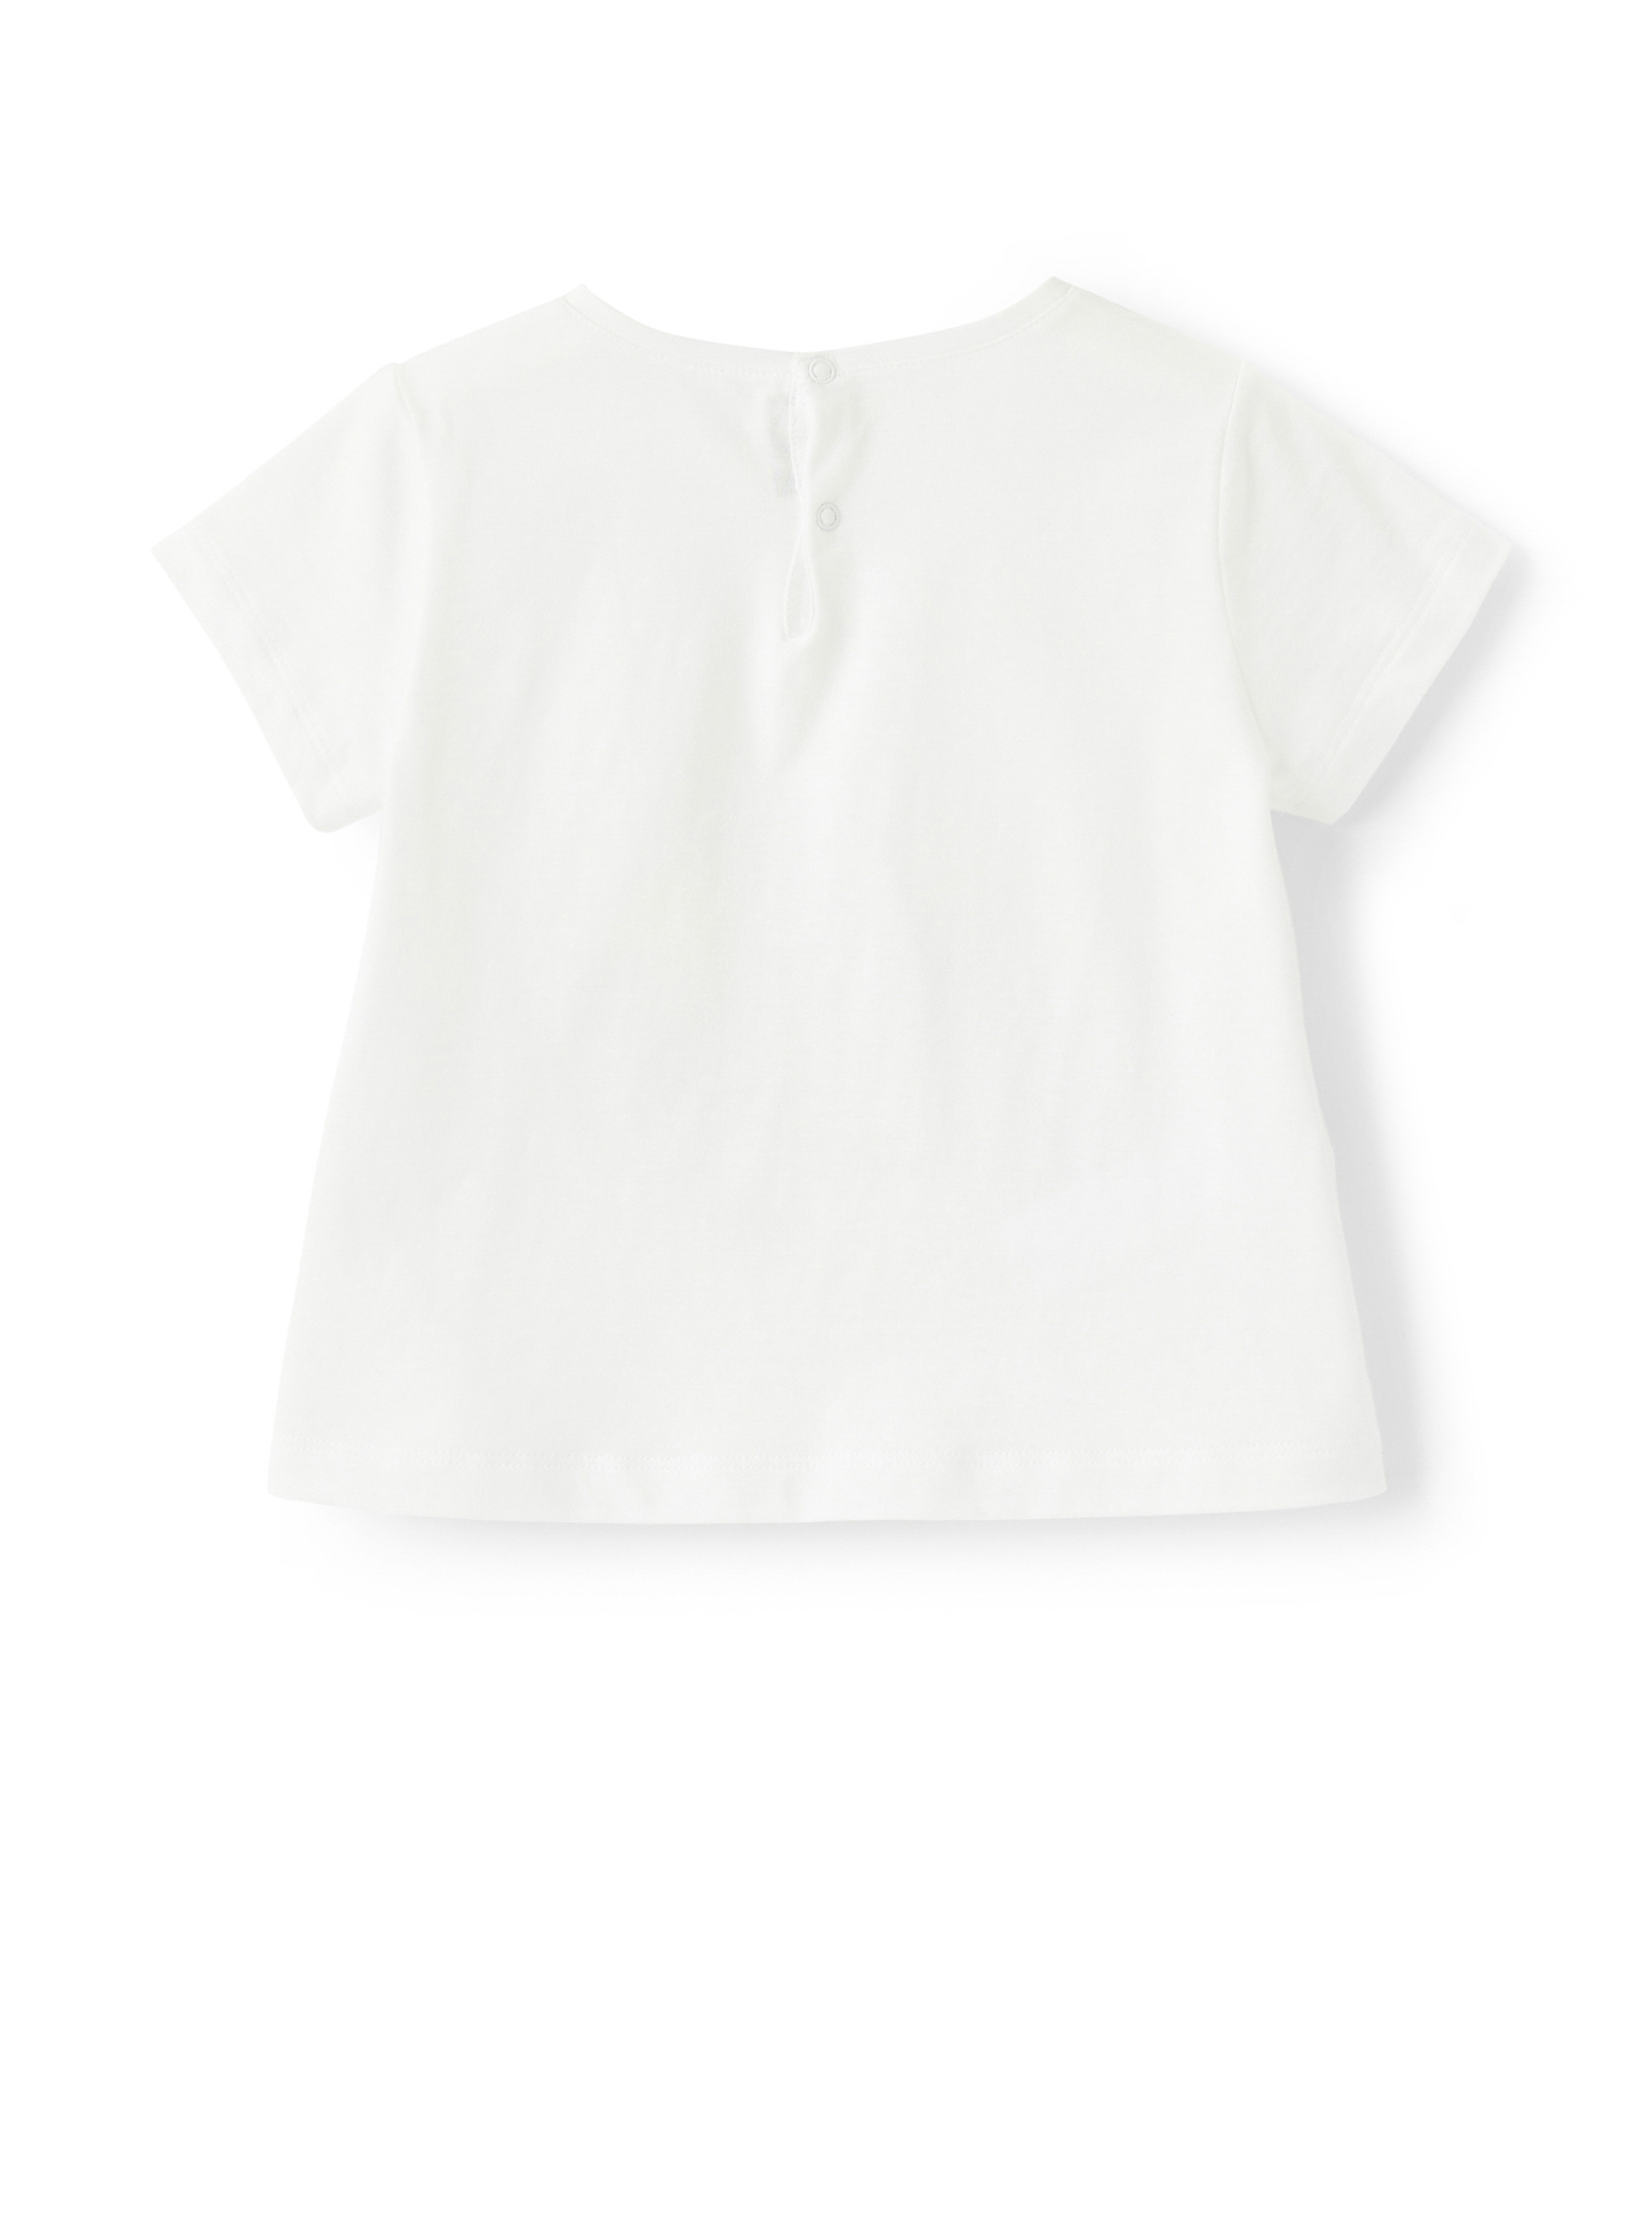 Weißes T-Shirt mit aufgedruckter Gans - Weiss | Il Gufo